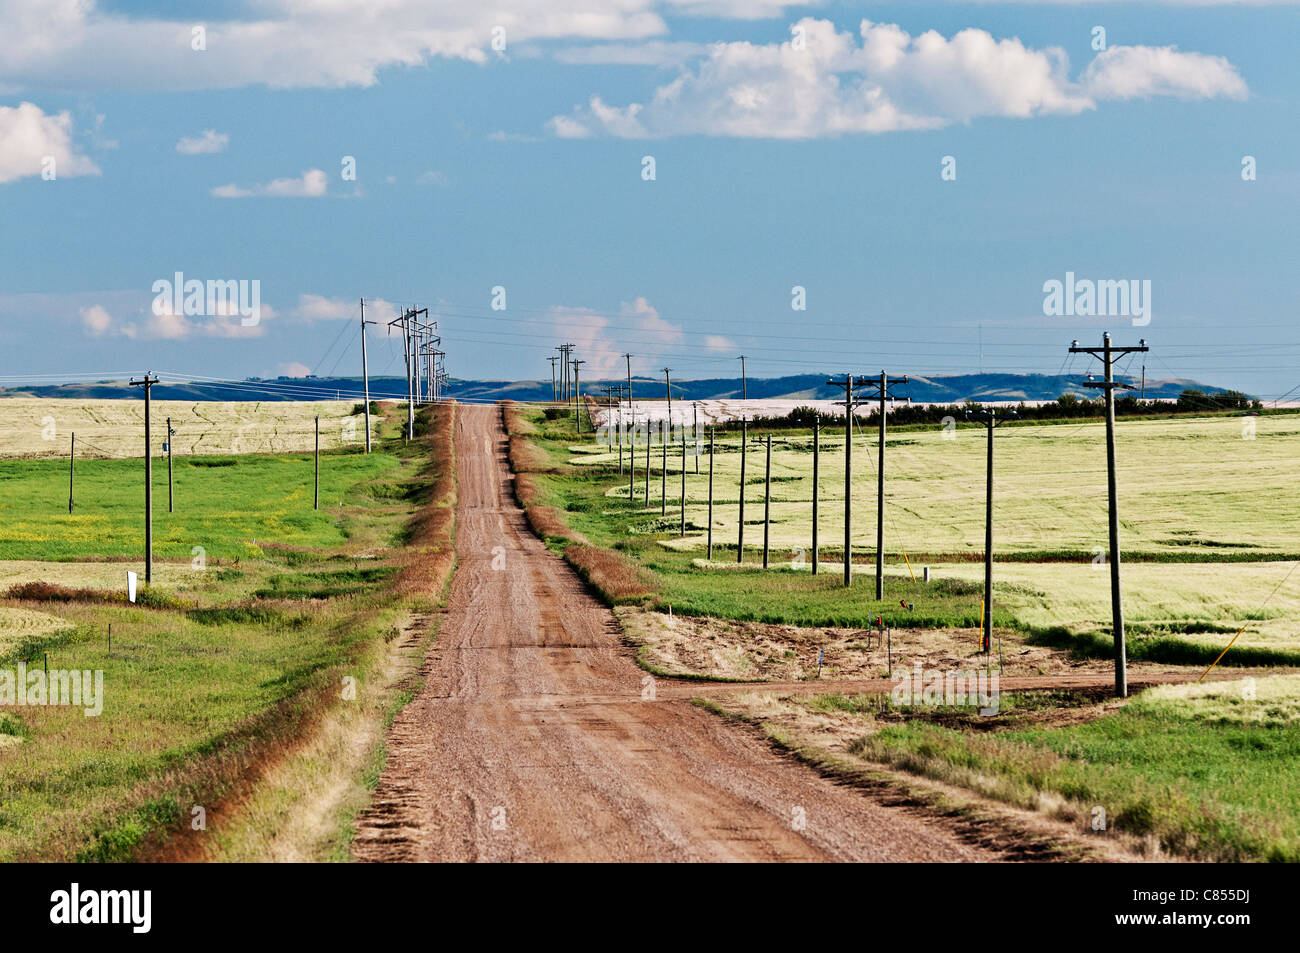 Ländlichen Alberta, Kanada: eine leere einsame Schotterstraße teilt Getreidefeldern. Stockfoto